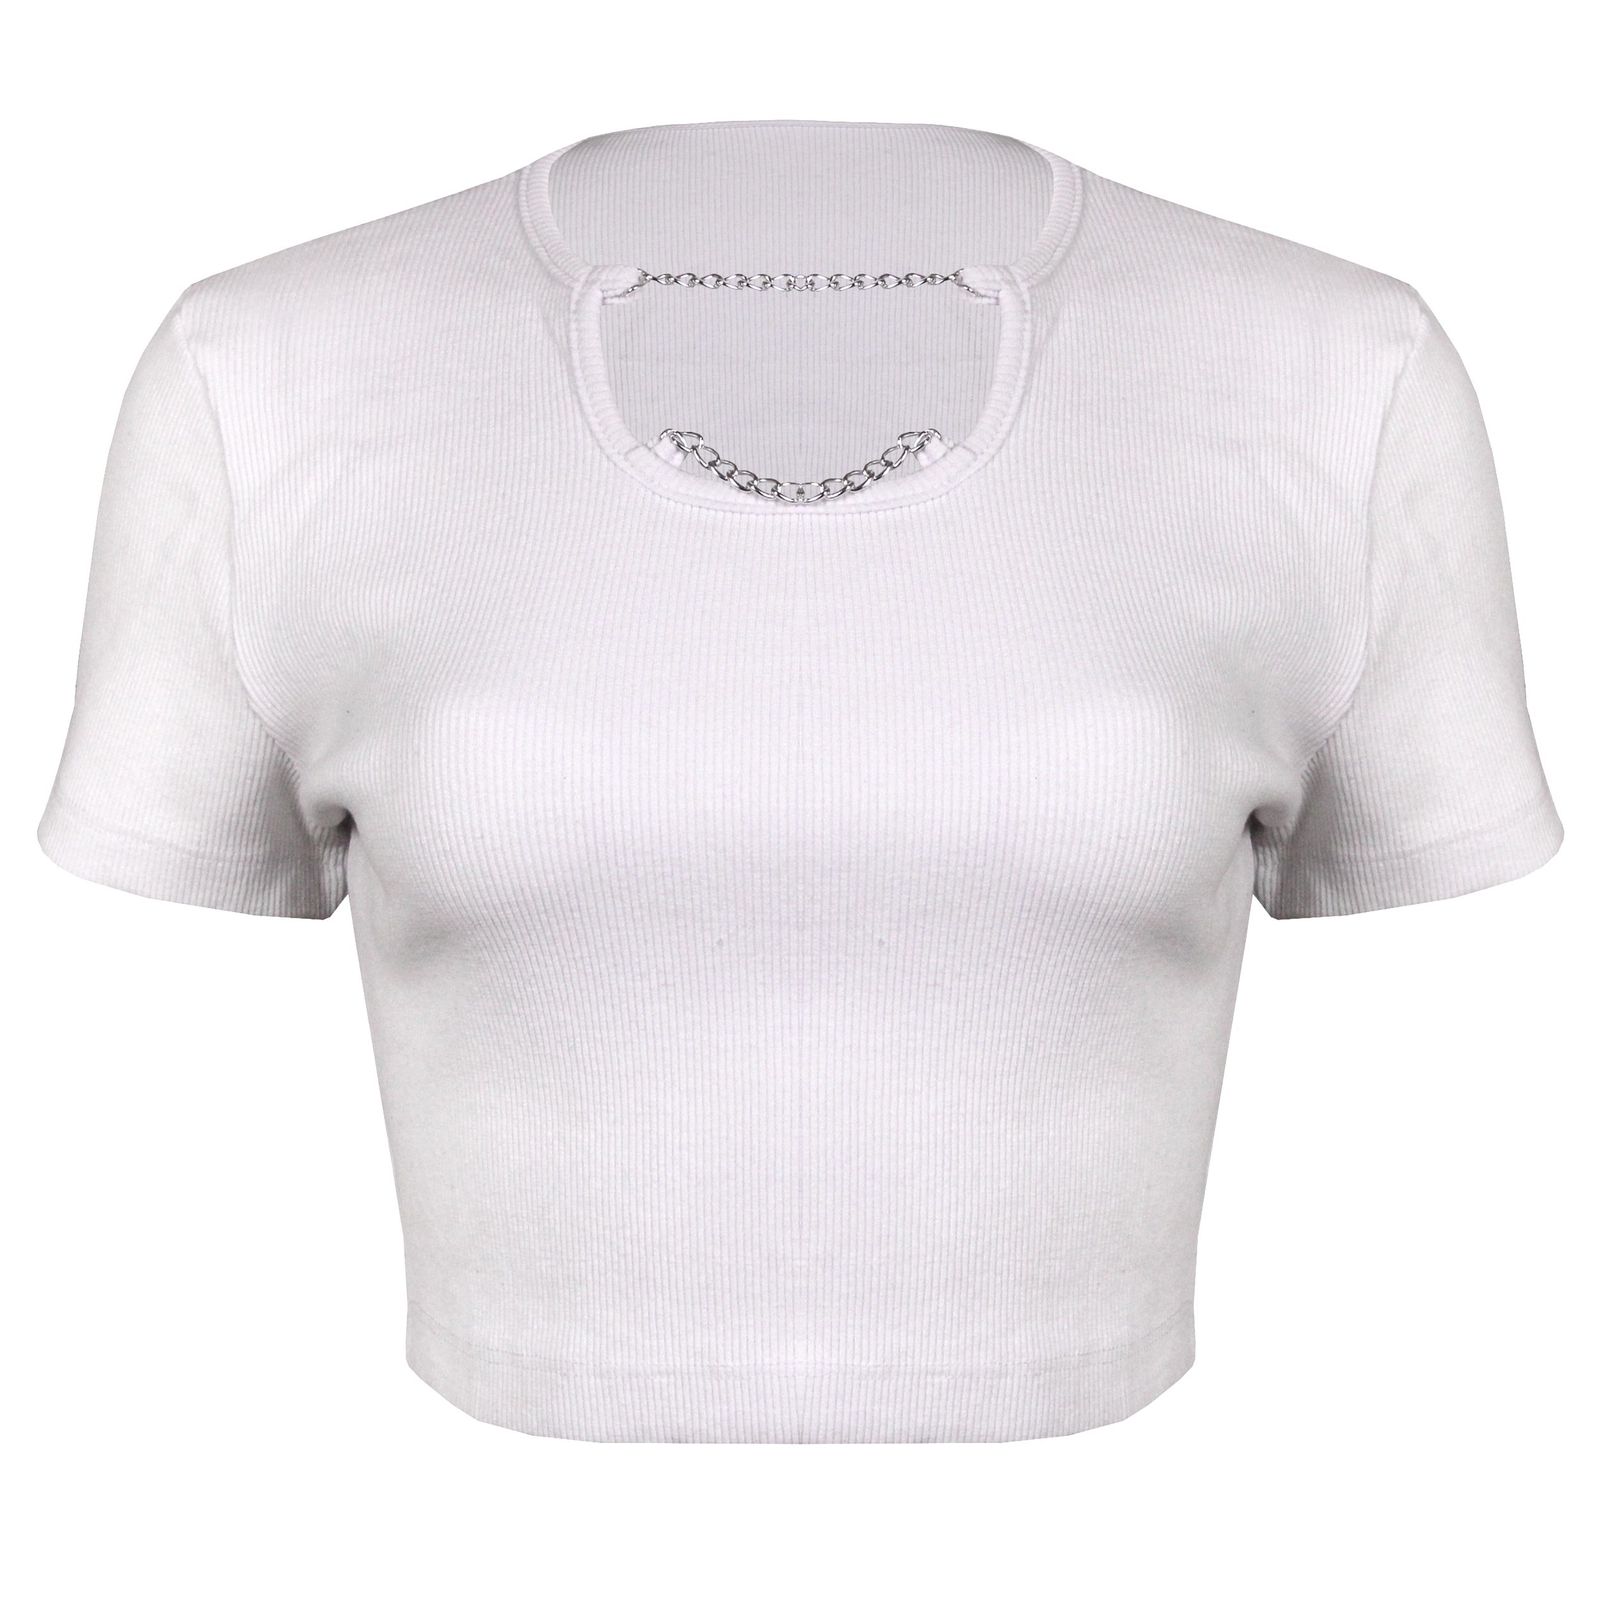 تی شرت آستین کوتاه زنانه ماییلدا مدل 4443-5430 رنگ سفید -  - 2